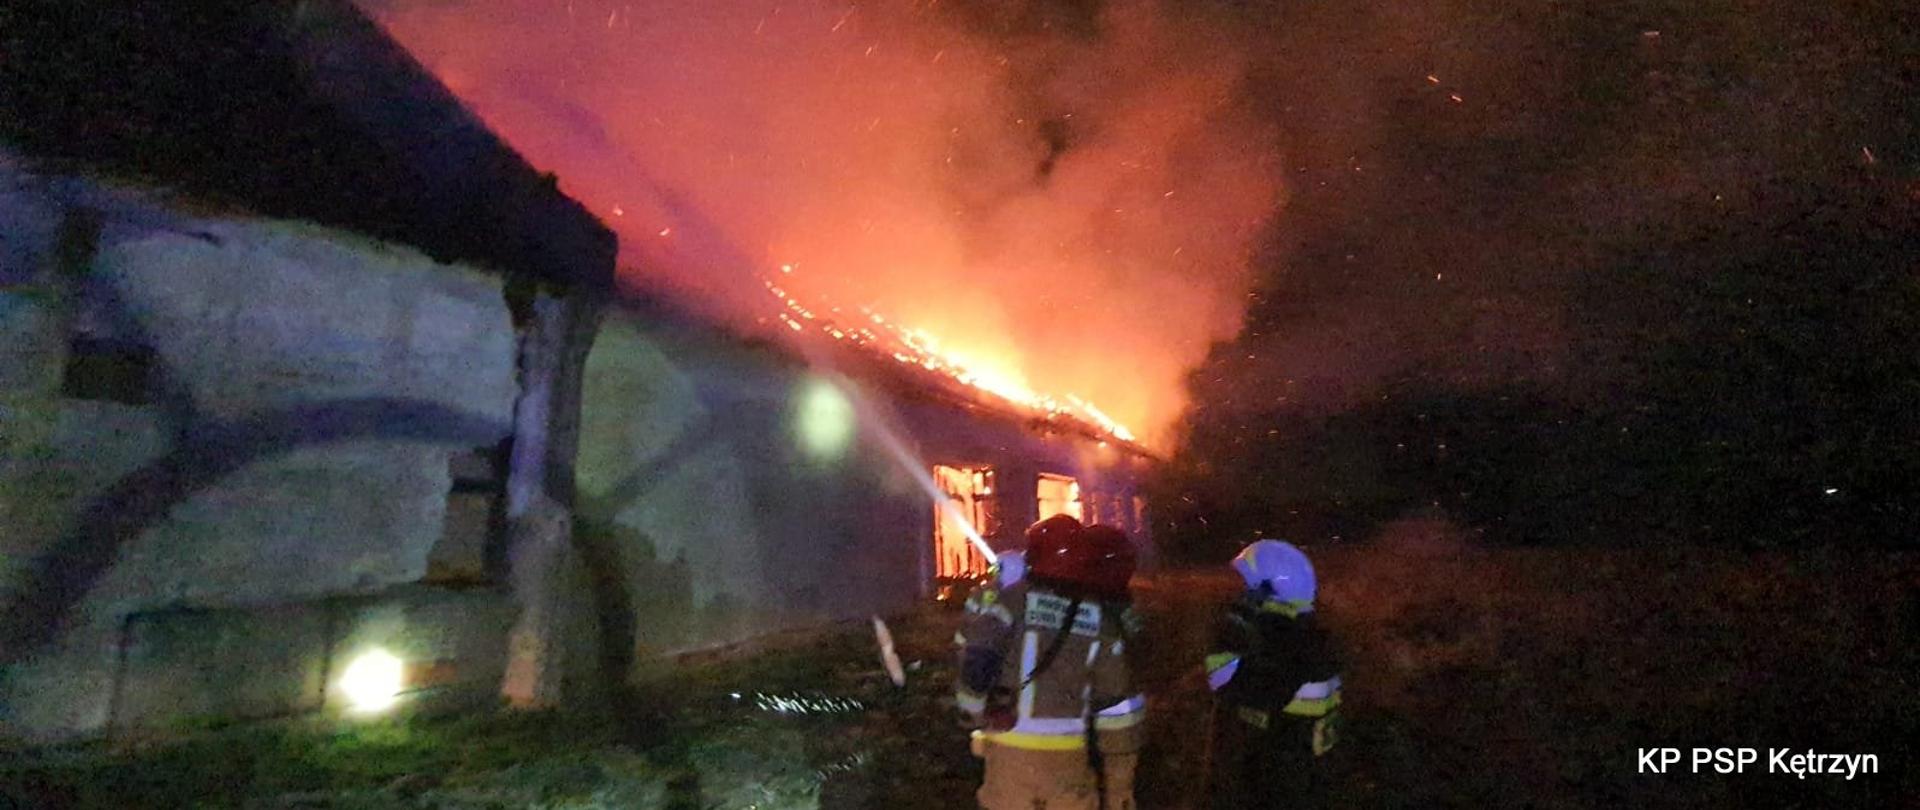 Zdjęcie wykonane na miejscu zdarzenia podczas nocnego pożaru stodoły. Strażacy stoją przed budynkiem i leją wodę na budynek objęty pożarem. Biały bym unosi się nad budynkiem wraz z ogniami lotnymi.